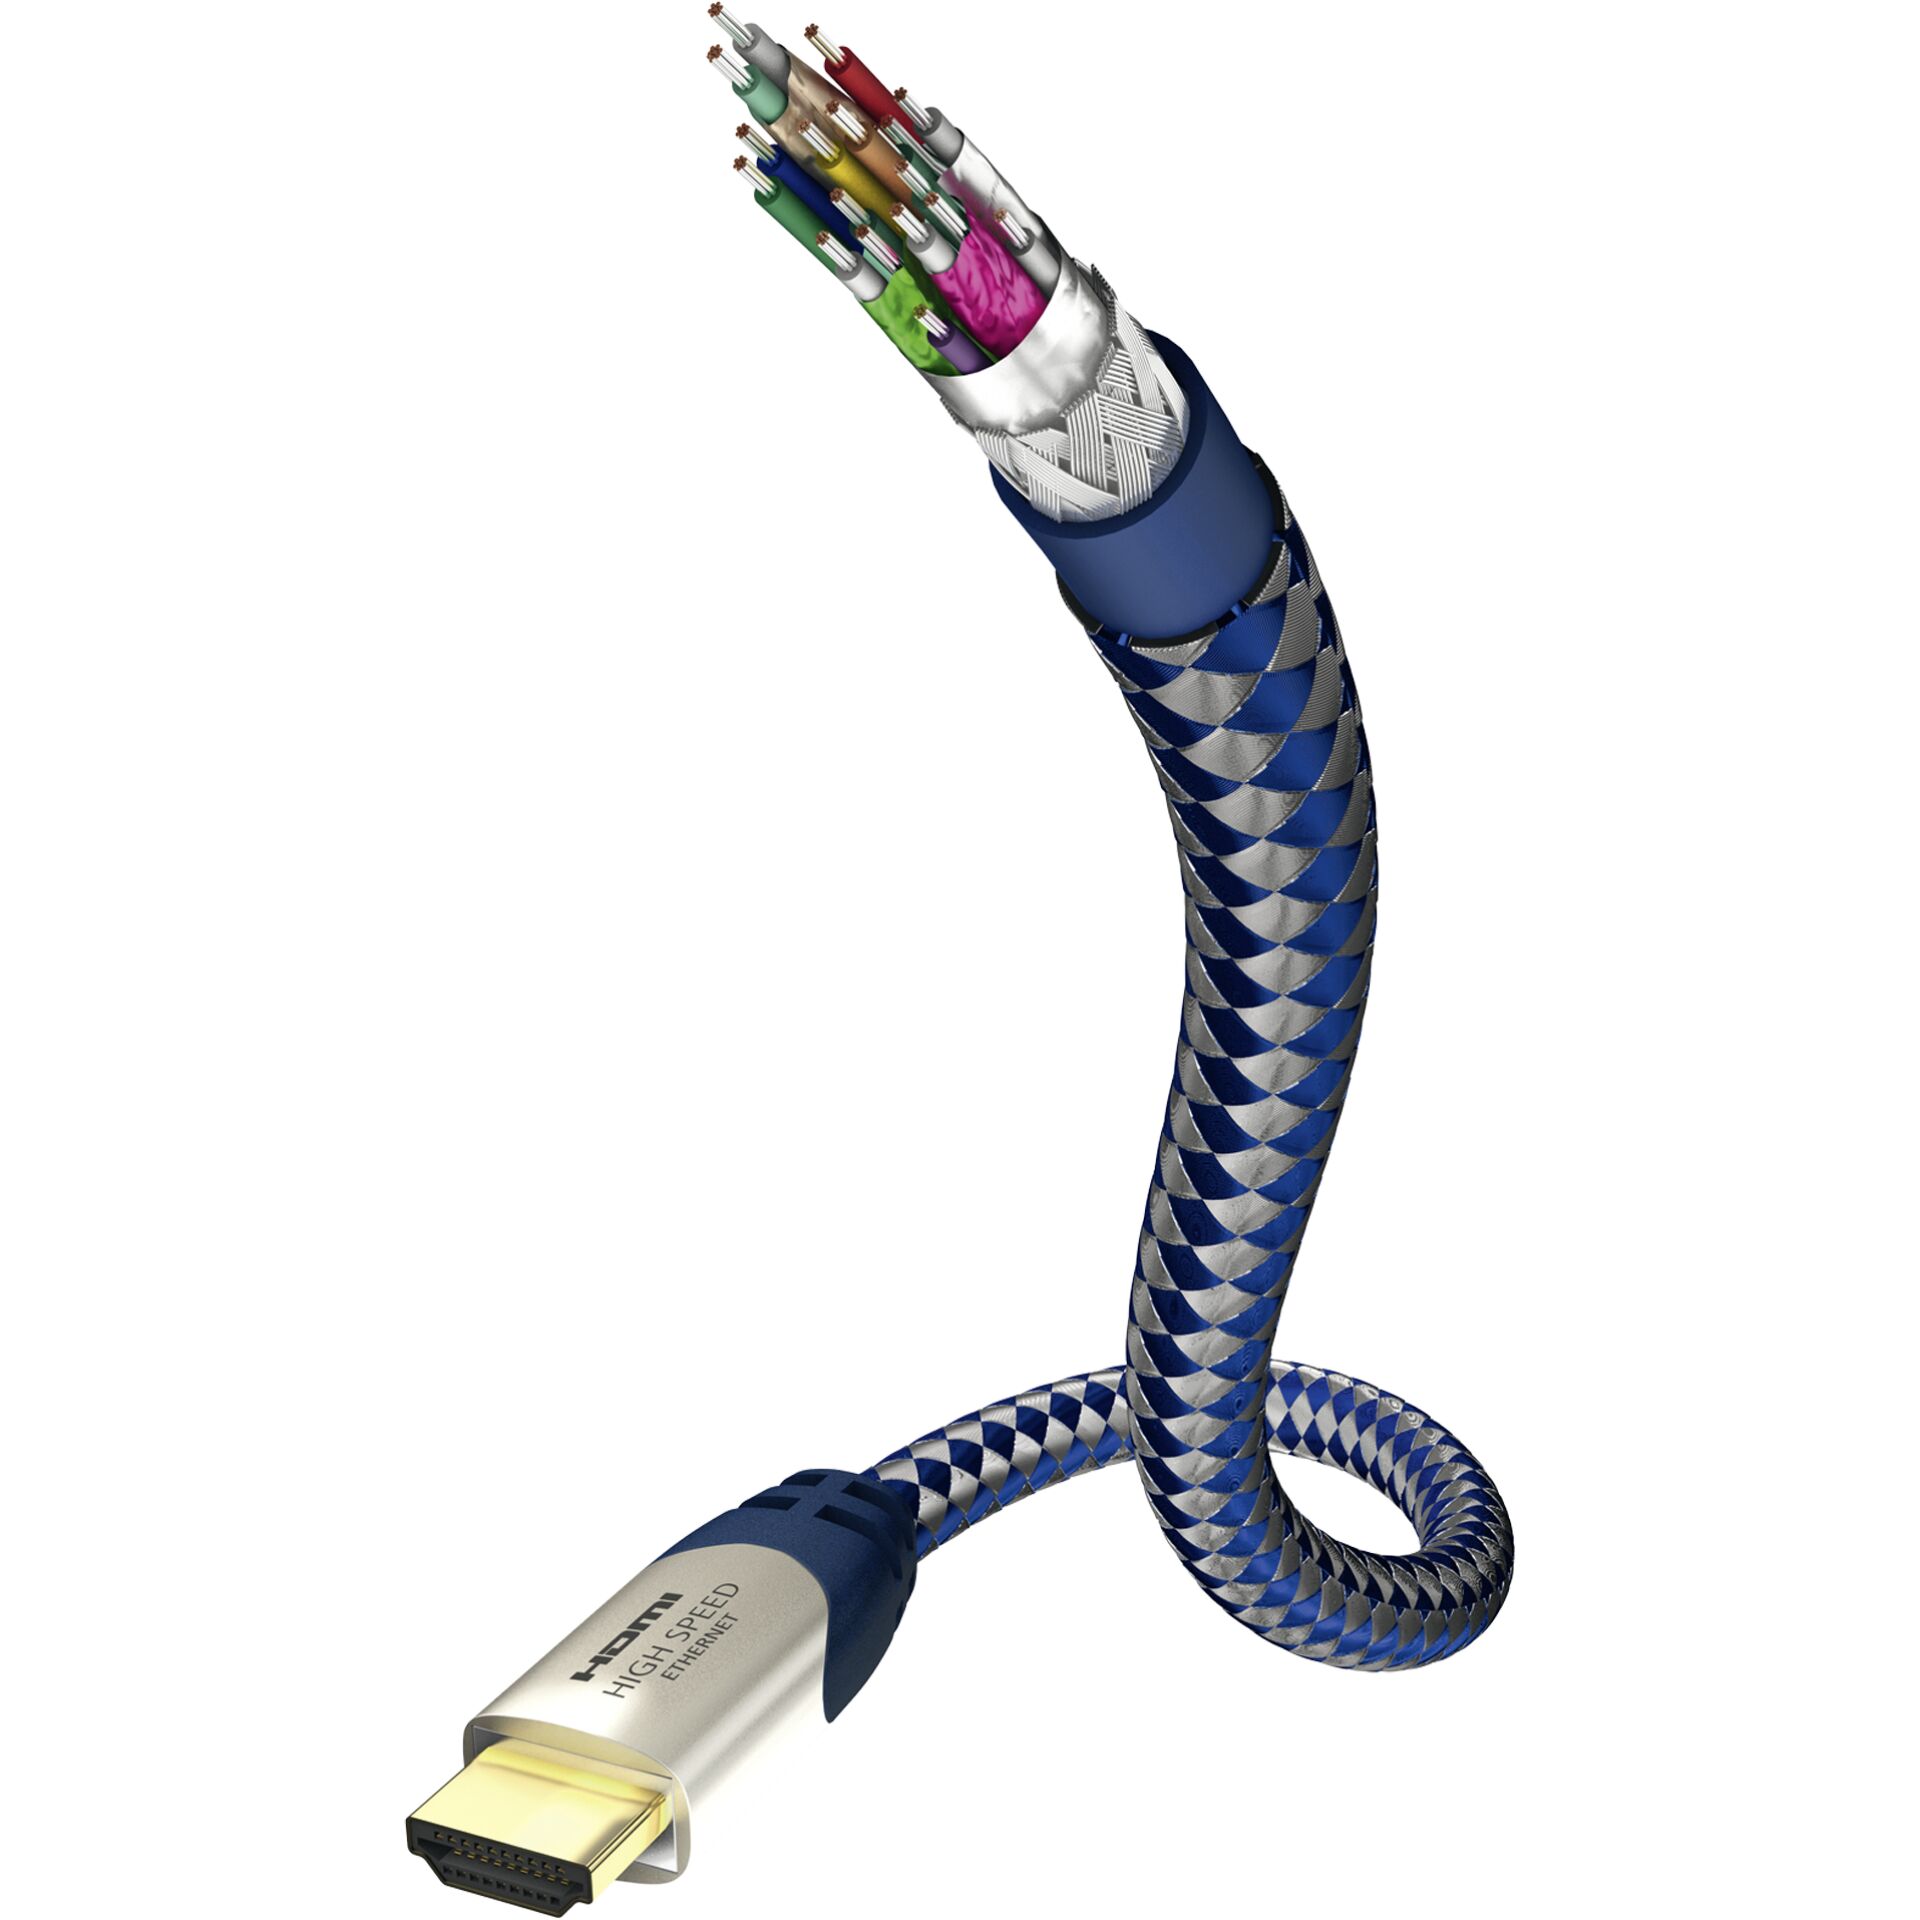 10m HDMI Kabel mit Ethernet Stecker/Stecker blau/silber 